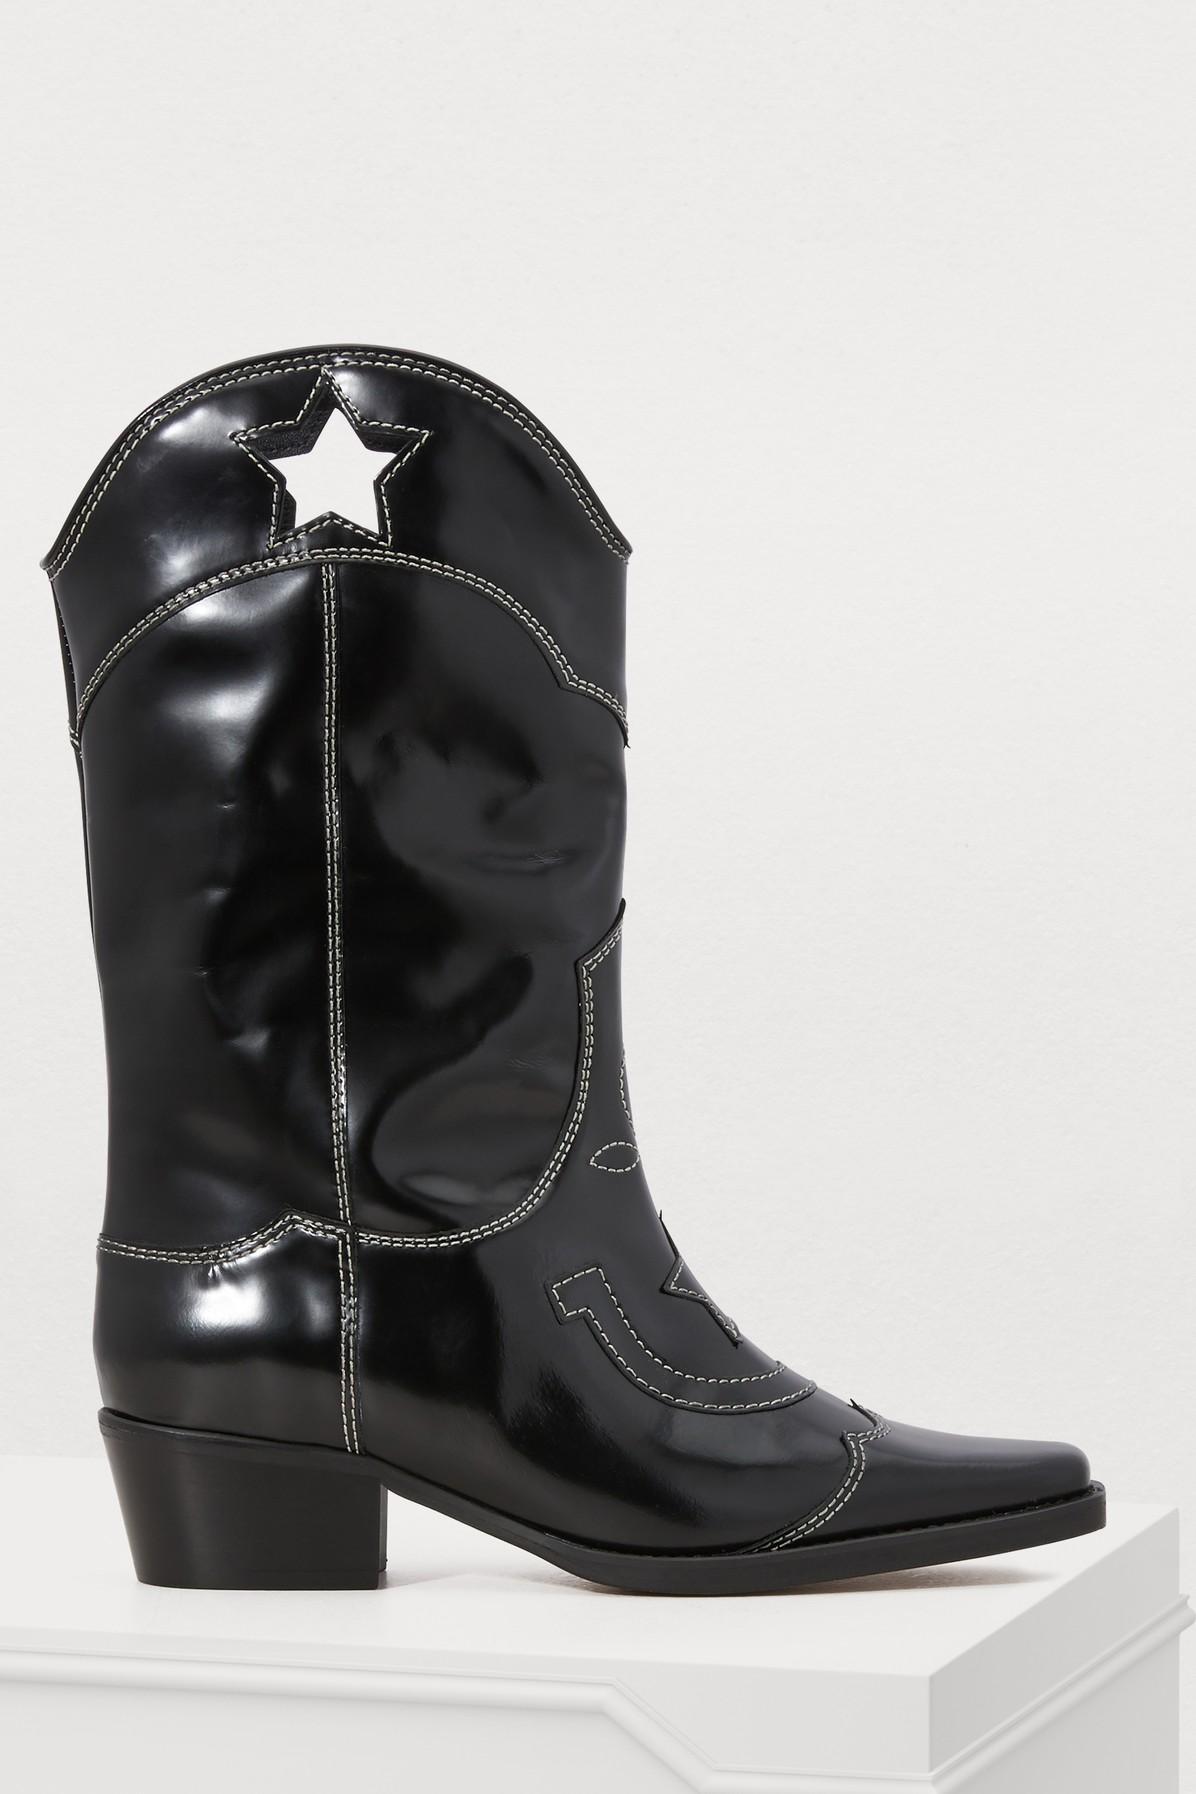 Ganni Leather Marlyn Western Boots in Black - Lyst